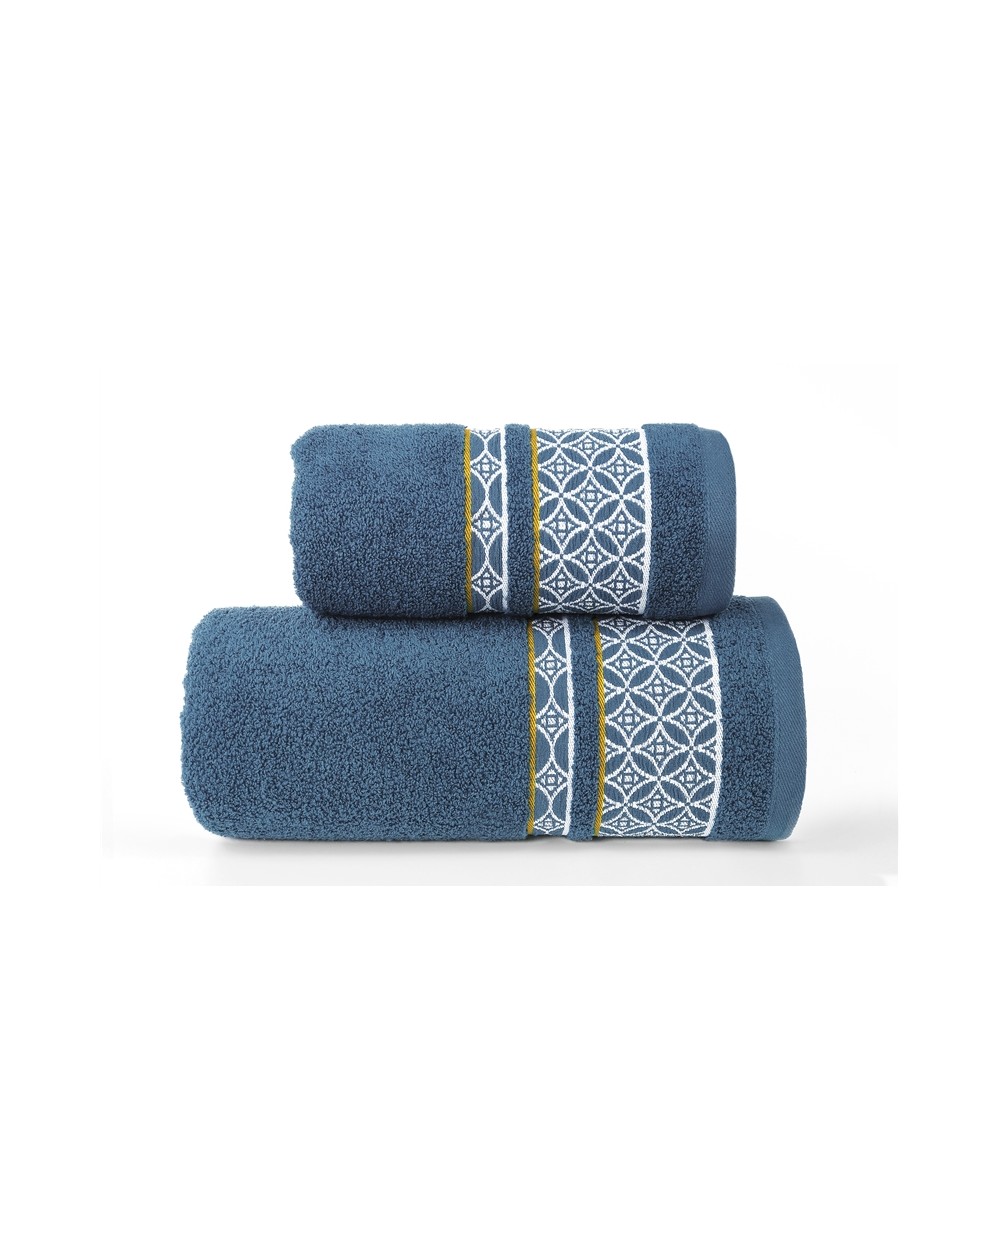 Ręcznik mikrobawełna 70X140 Arabiana niebieski Greno